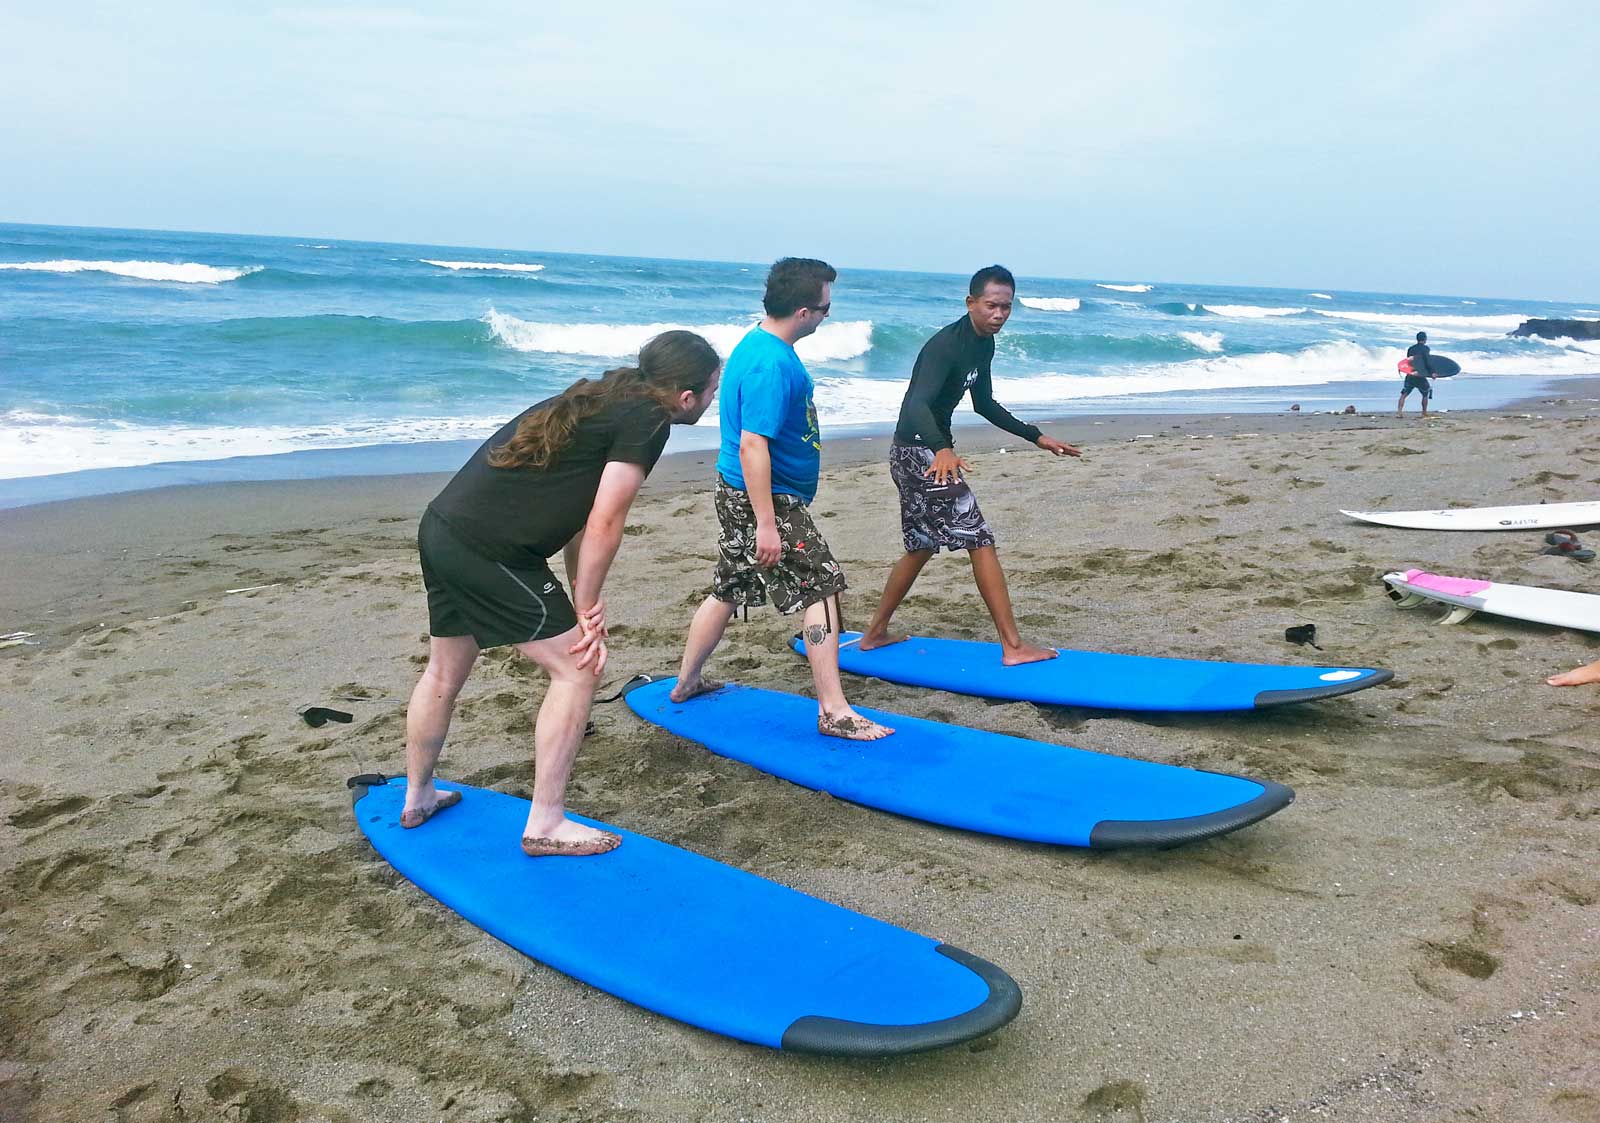 bai surf lessons, surf tours